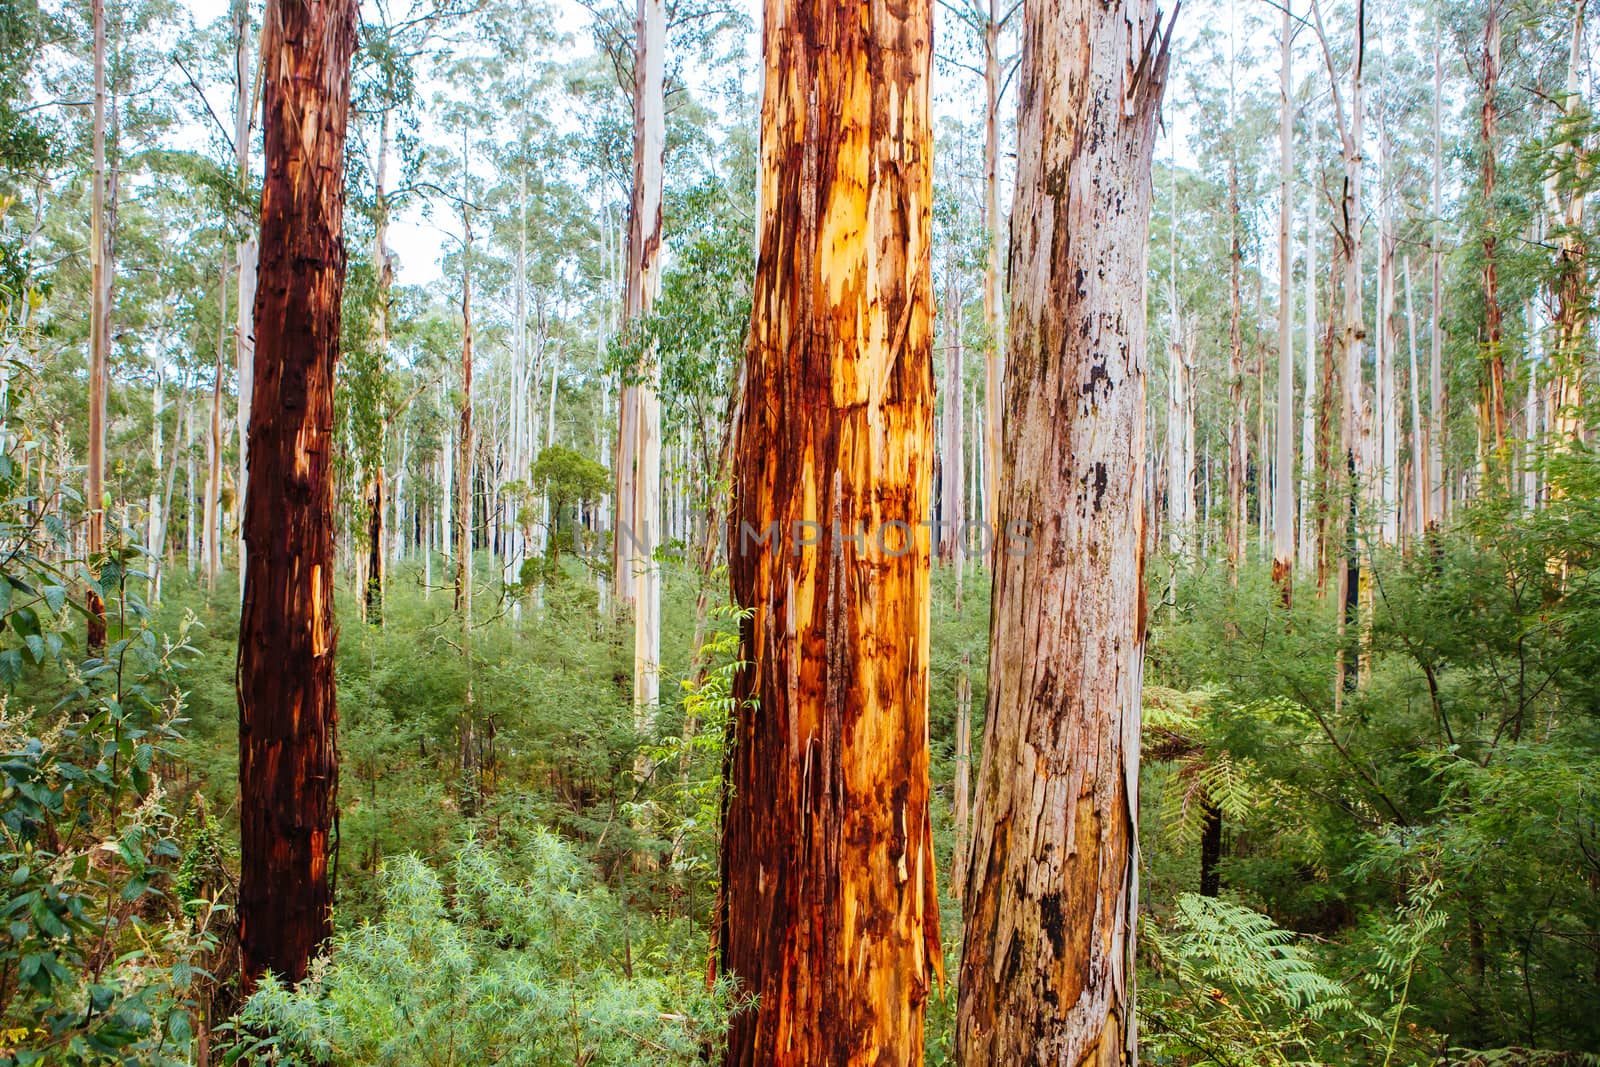 Black Spur Scenery in Australia by FiledIMAGE